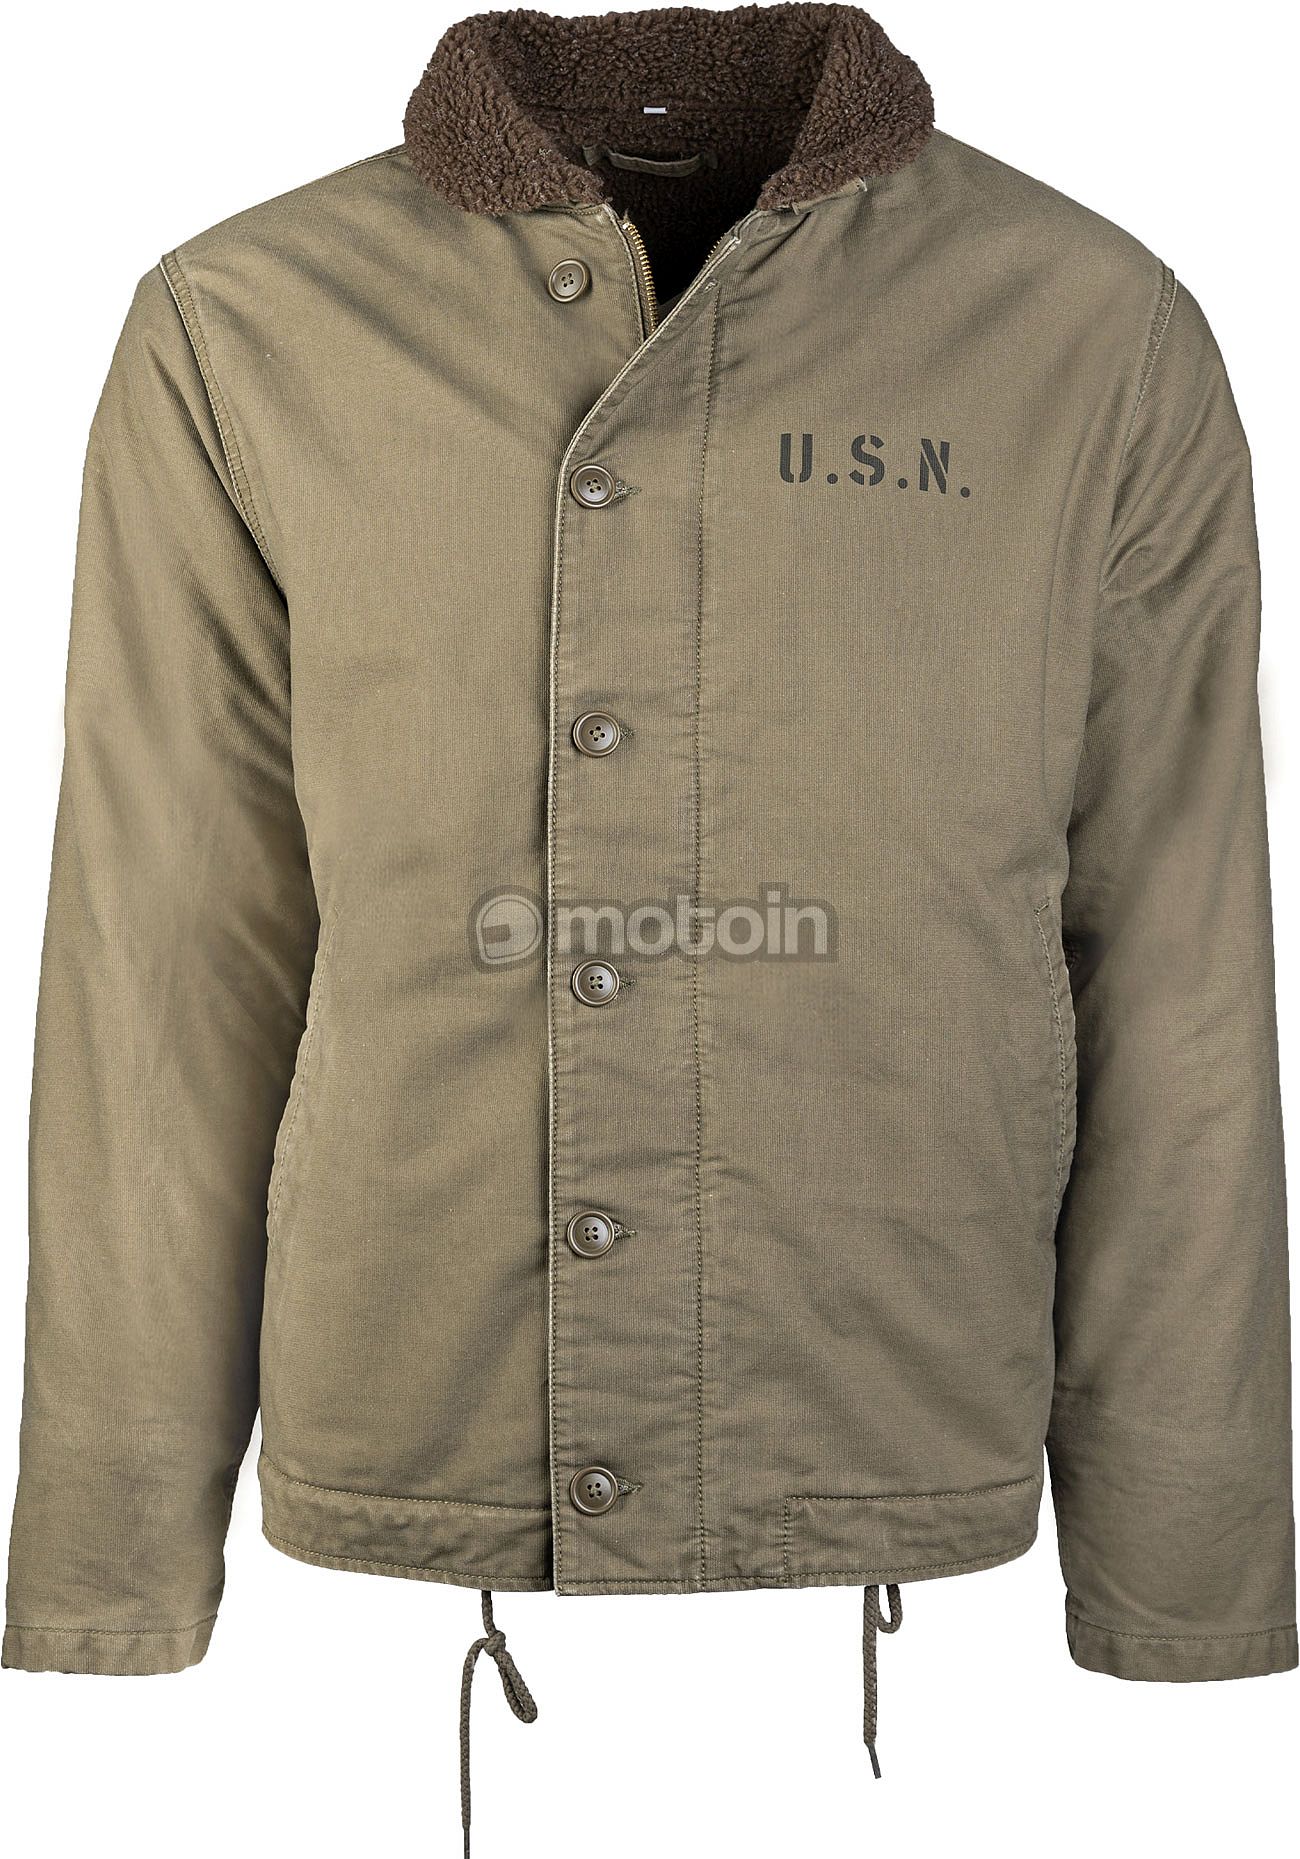 Navy jacket textile N-1, US Mil-Tec Deck